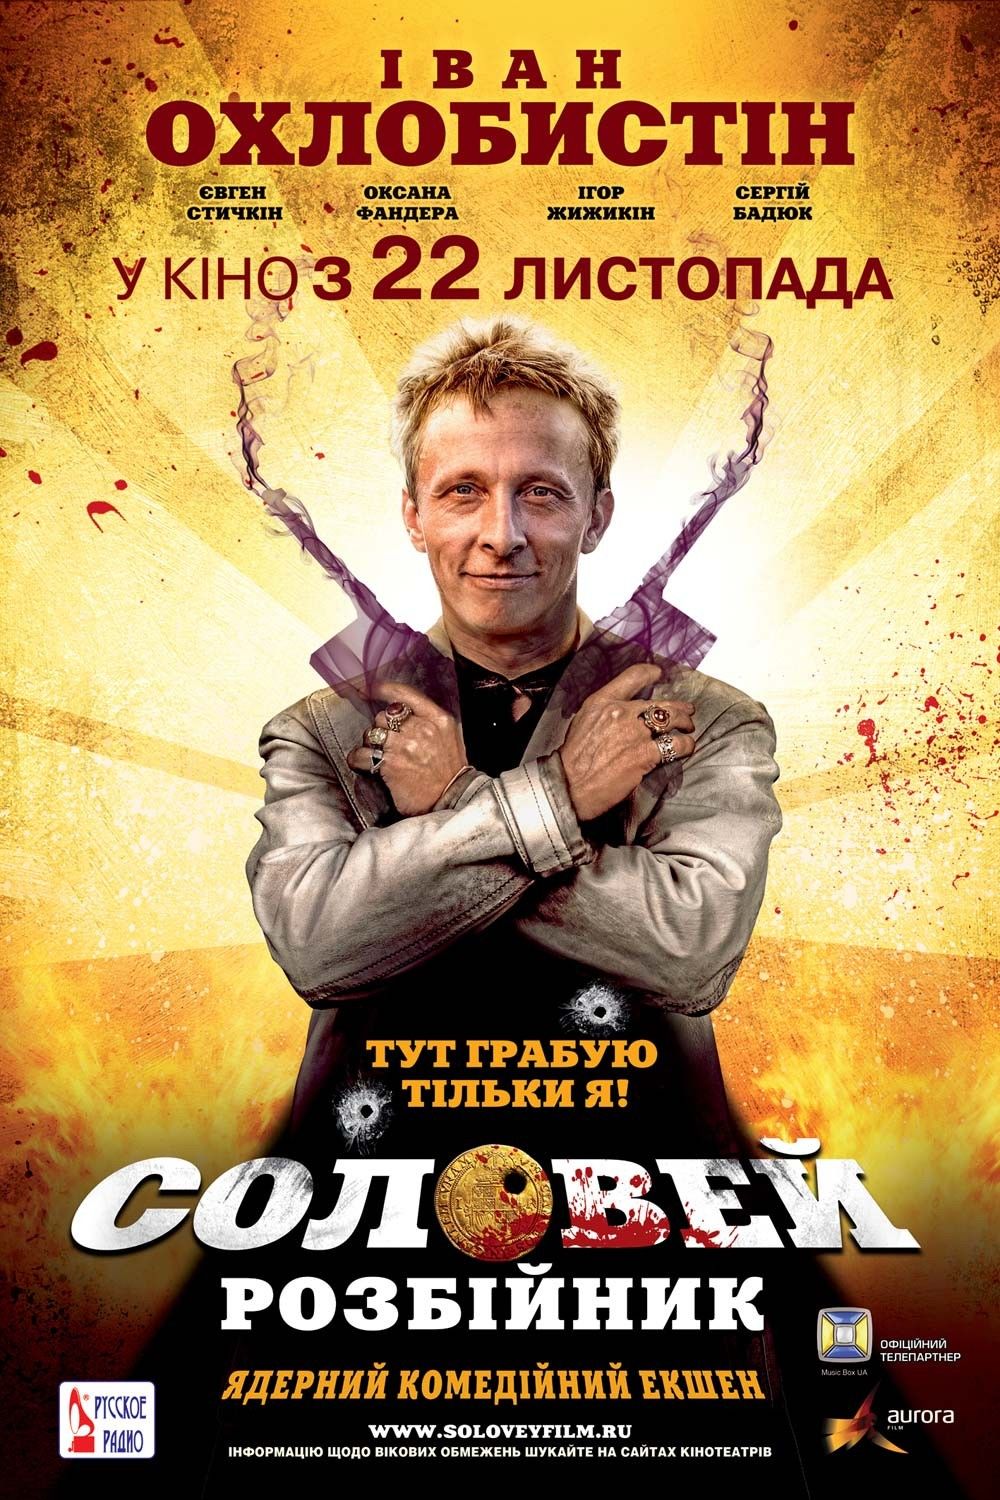 Соловей разбойник 2012 Постер